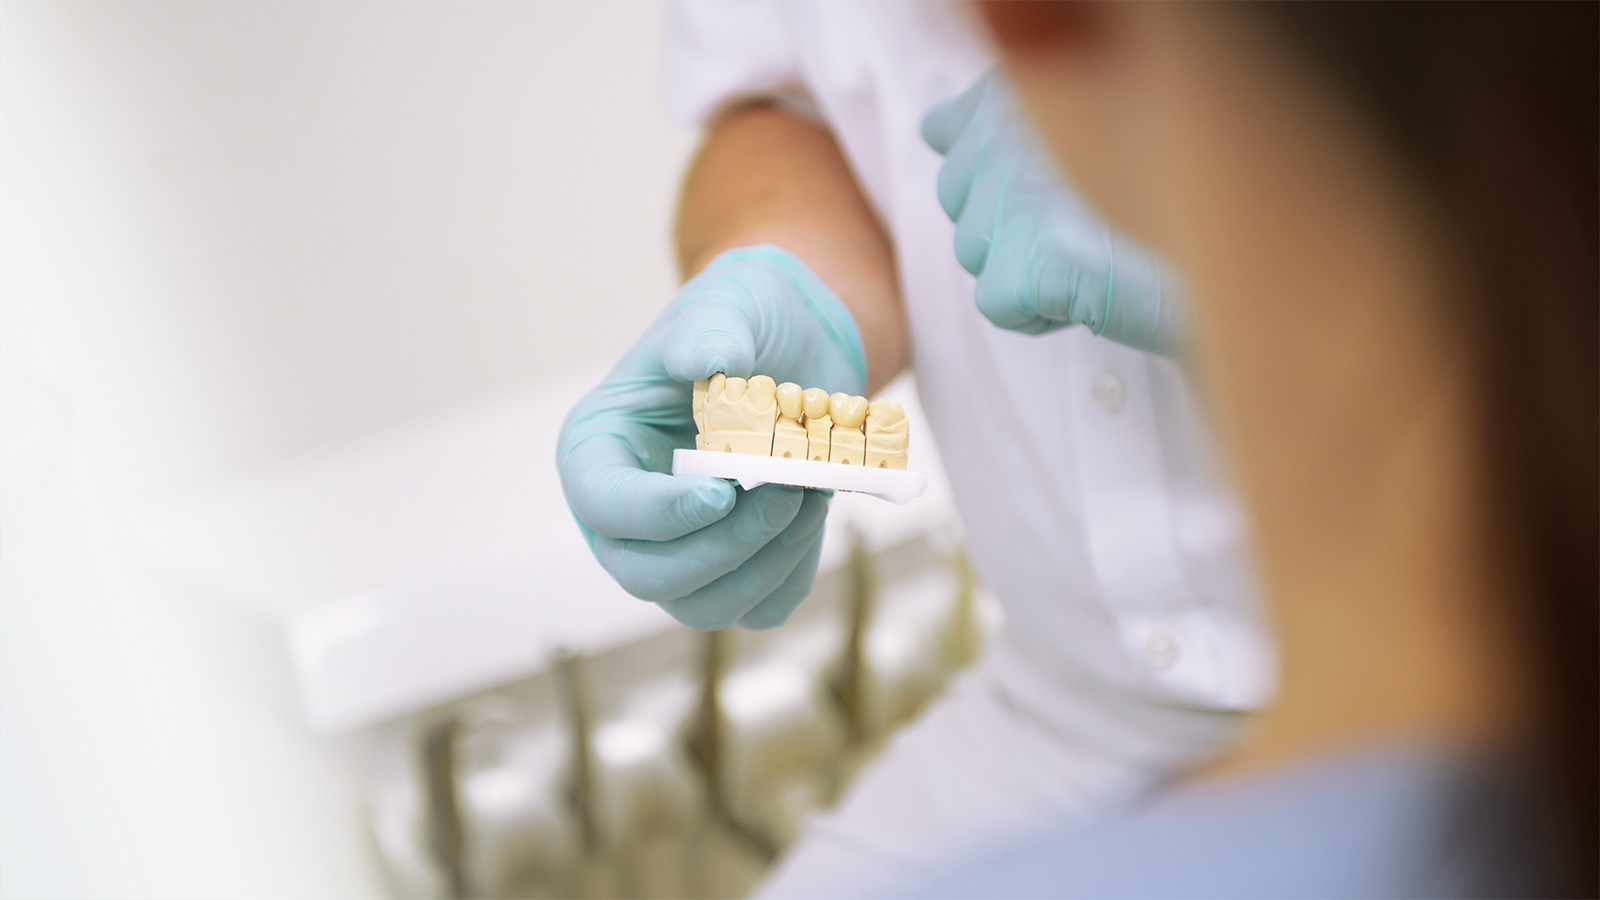 Zahnarztpraxis Dr. Molz - Zahnersatz-Modell in den Händen von Dr. Molz 